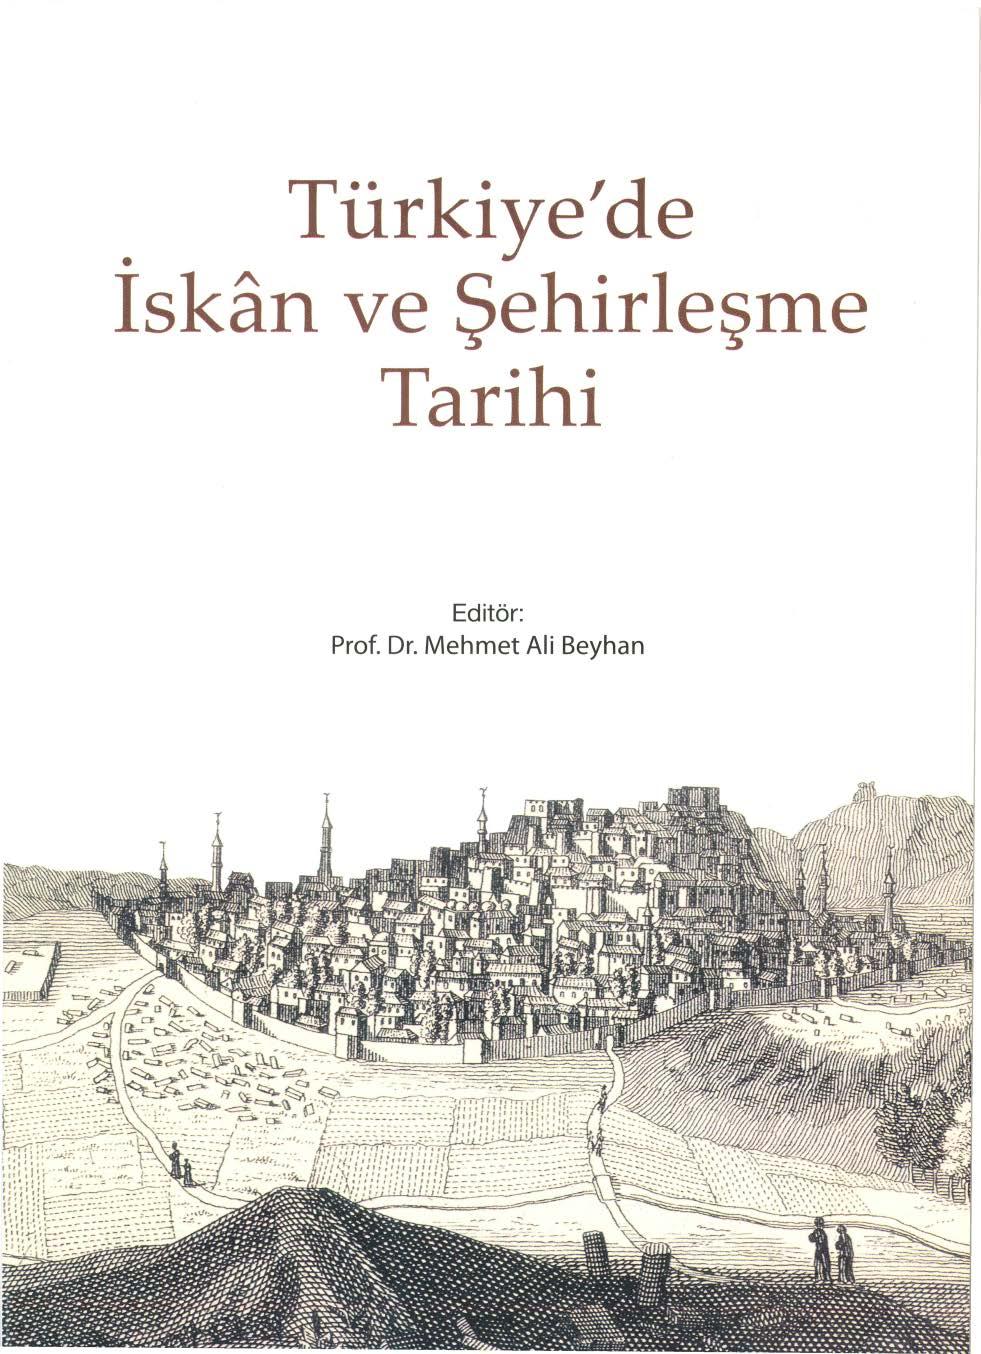 Türkiye' de iskan ve Şehirleşme